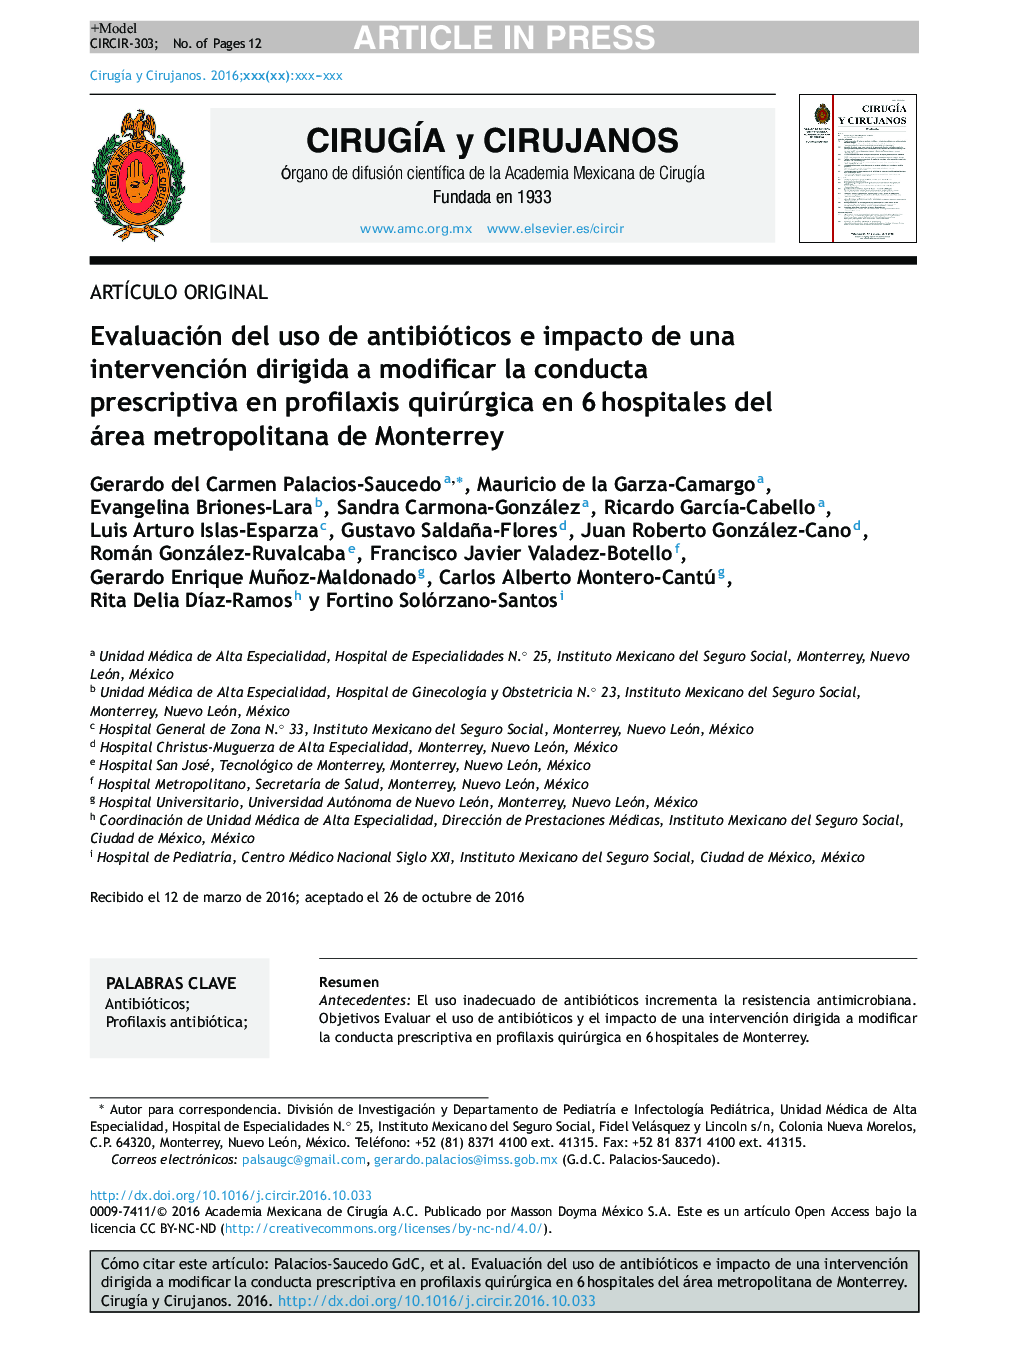 Evaluación del uso de antibióticos e impacto de una intervención dirigida a modificar la conducta prescriptiva en profilaxis quirúrgica en 6Â hospitales del área metropolitana de Monterrey